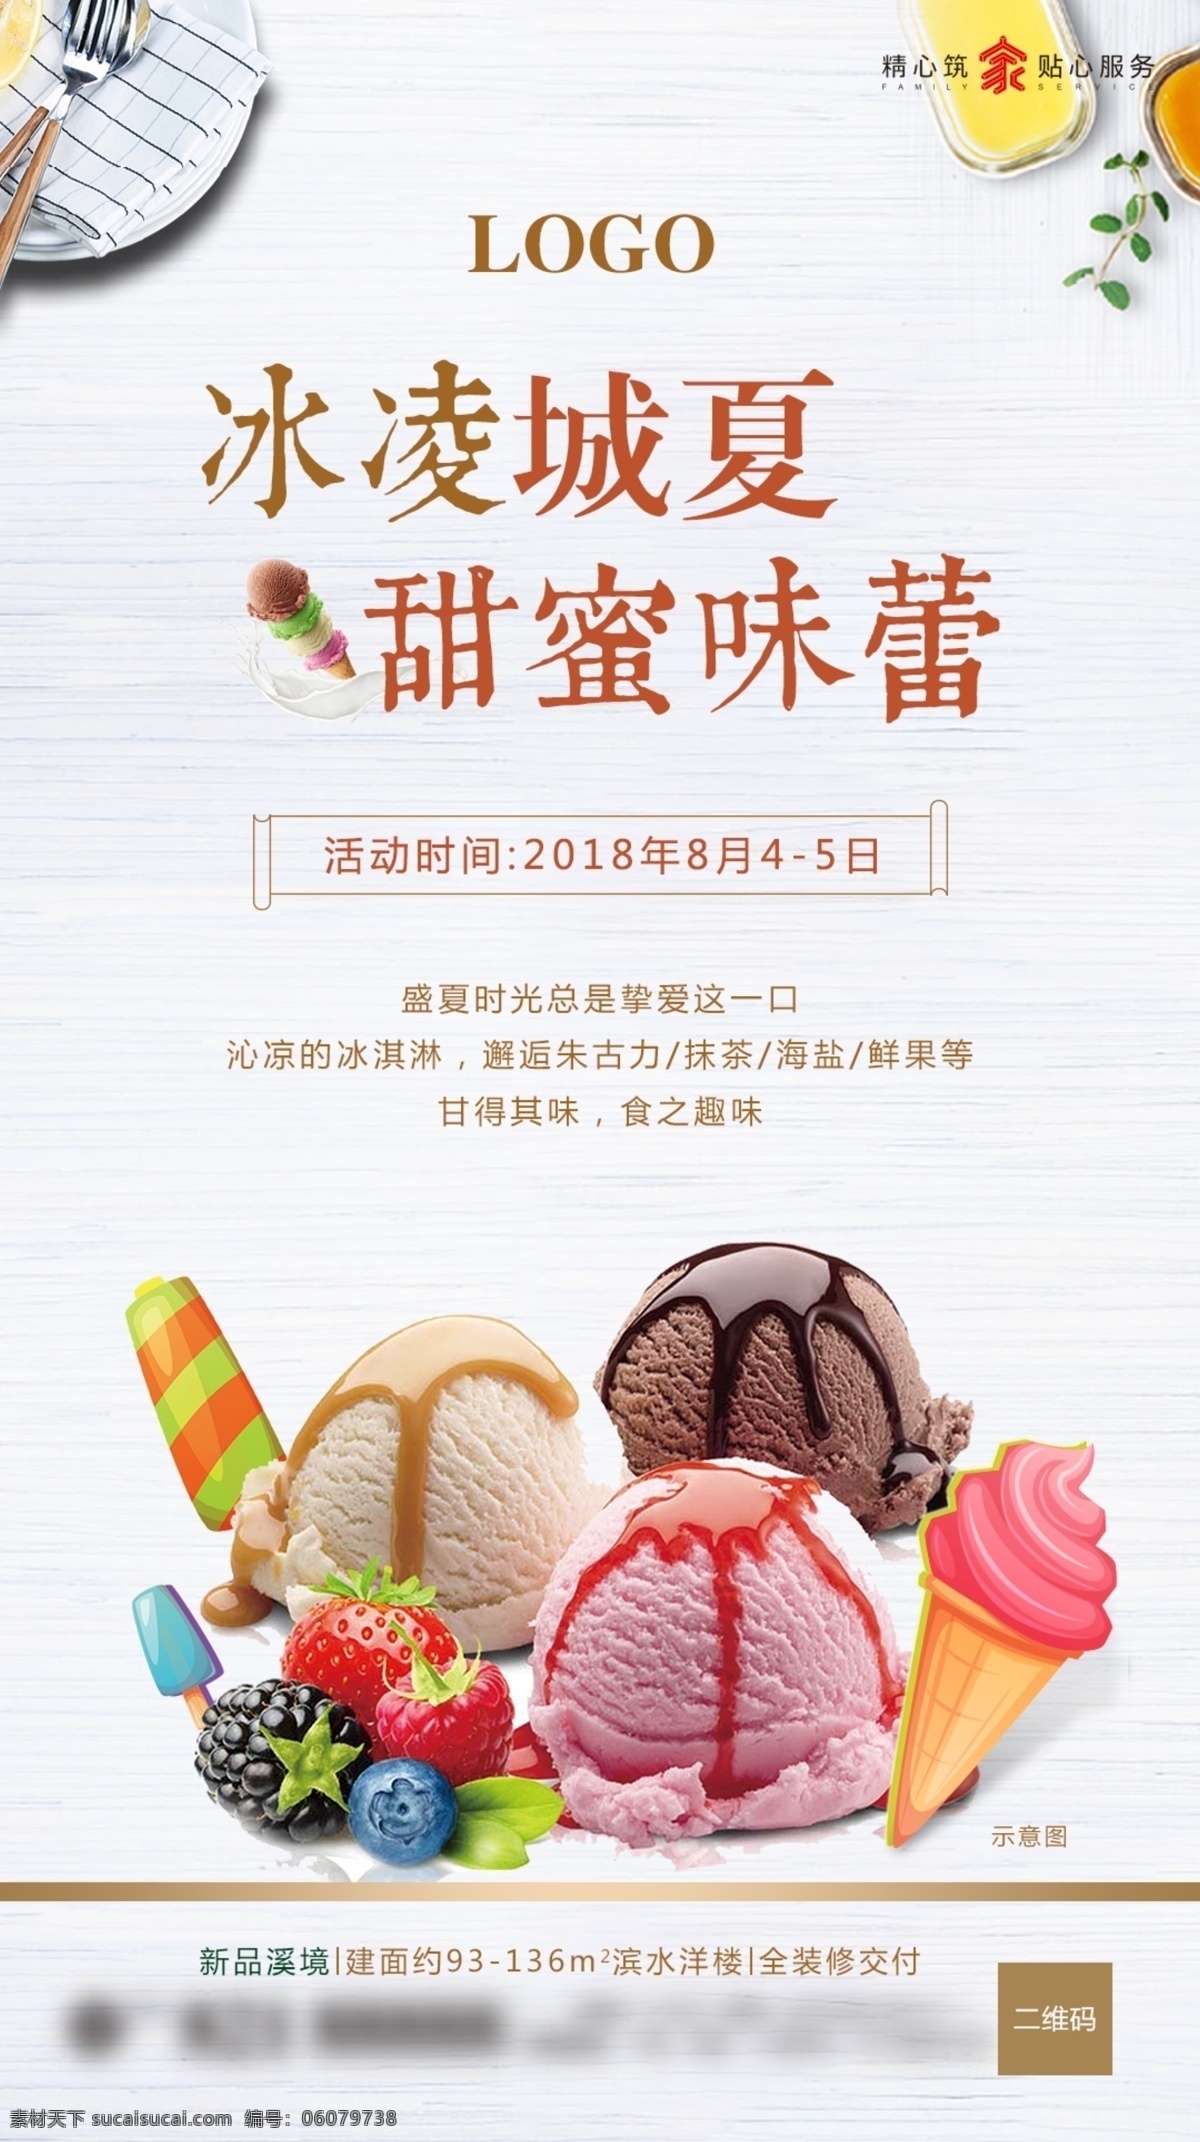 冰淇淋单图 甜蜜味蕾 冰凌城夏 沁凉夏季 鲜果冰淇淋 周末暖场活动 微信单图 地产设计